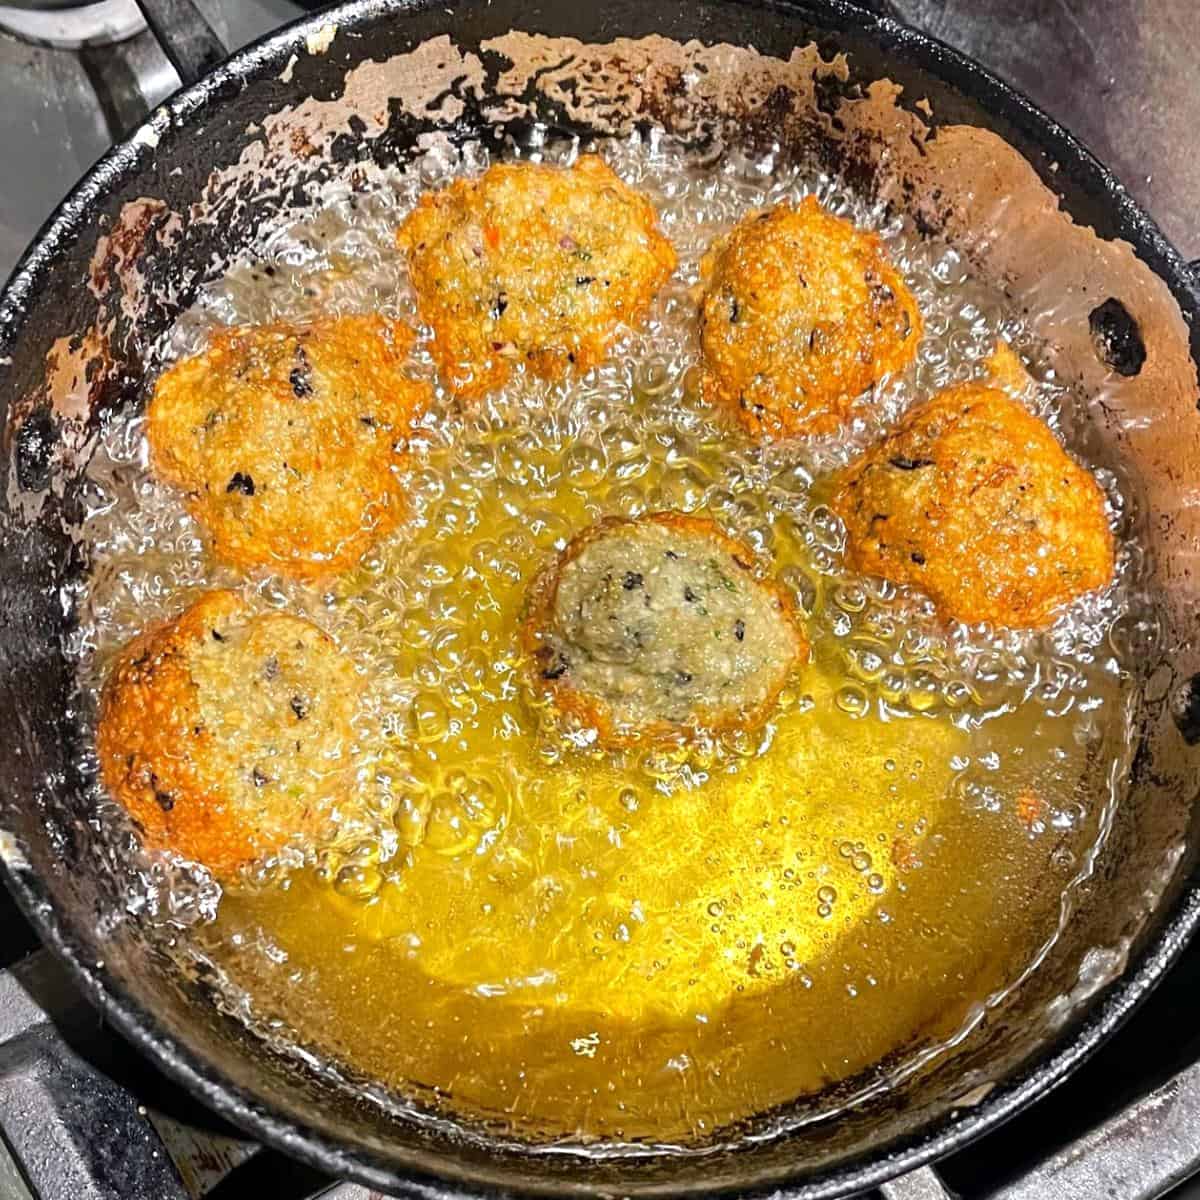 Akara deep frying in frying pan.